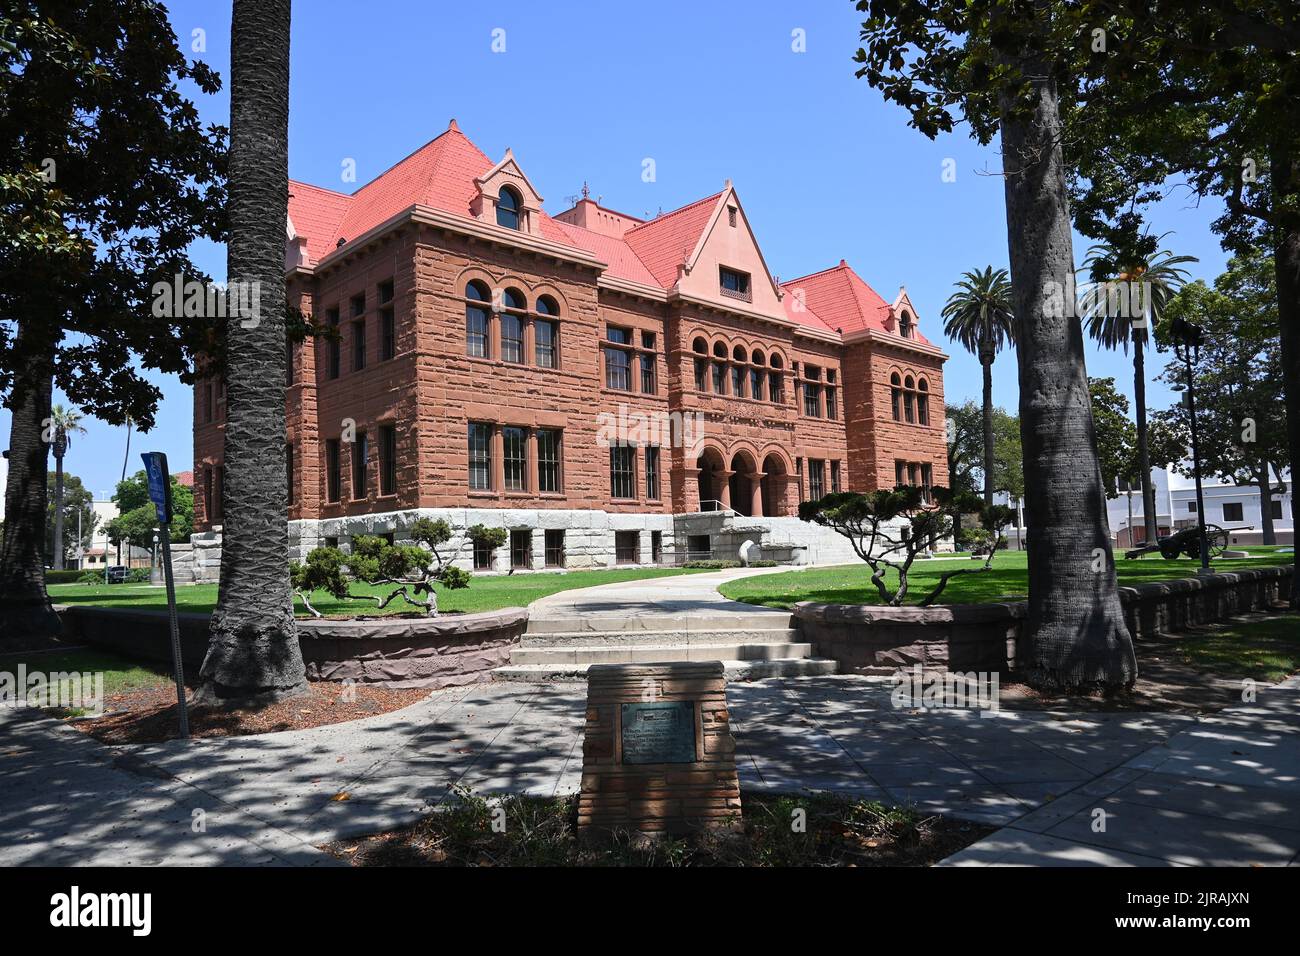 SANTA ANA, CALIFORNIA - 22 AUG 2022: The historic landmark Old Orange County Courthouse in Downtown Santa Ana Stock Photo